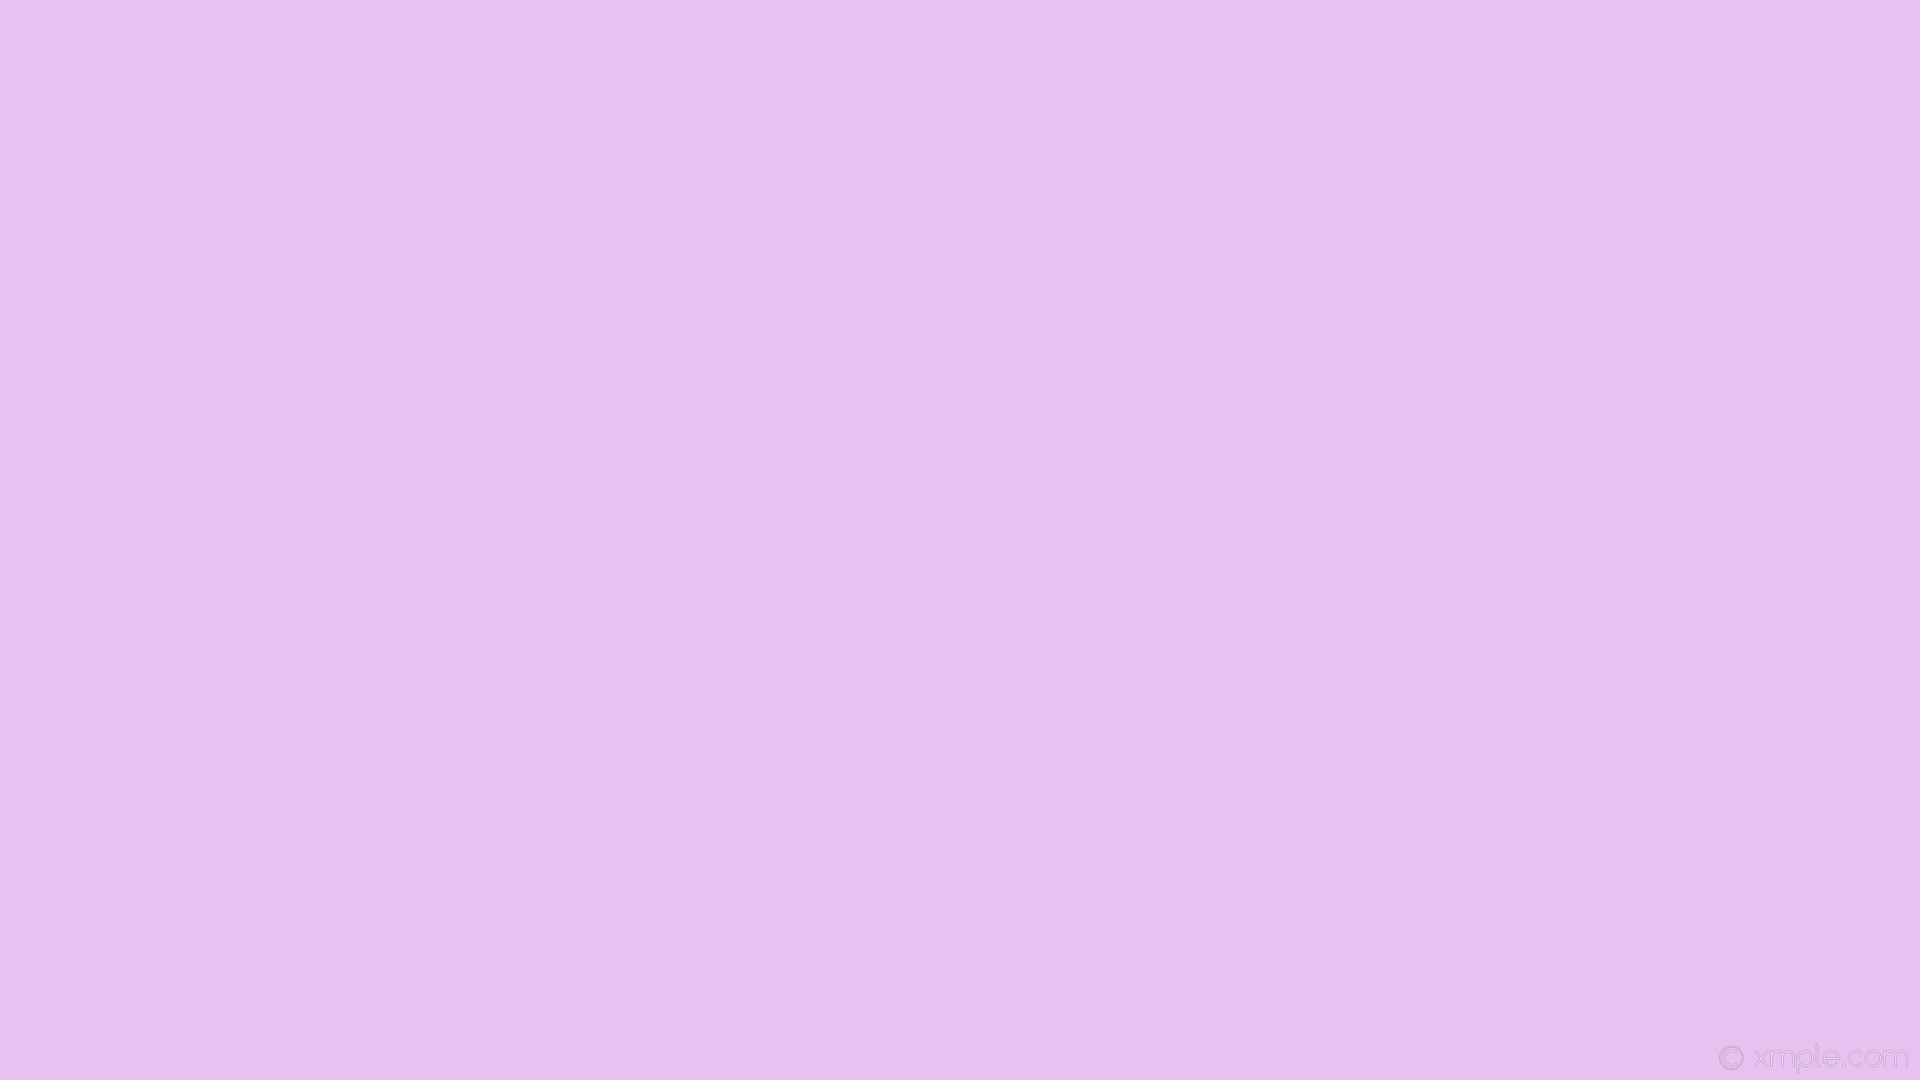 plain pastel wallpaper,violet,pink,purple,lilac,lavender